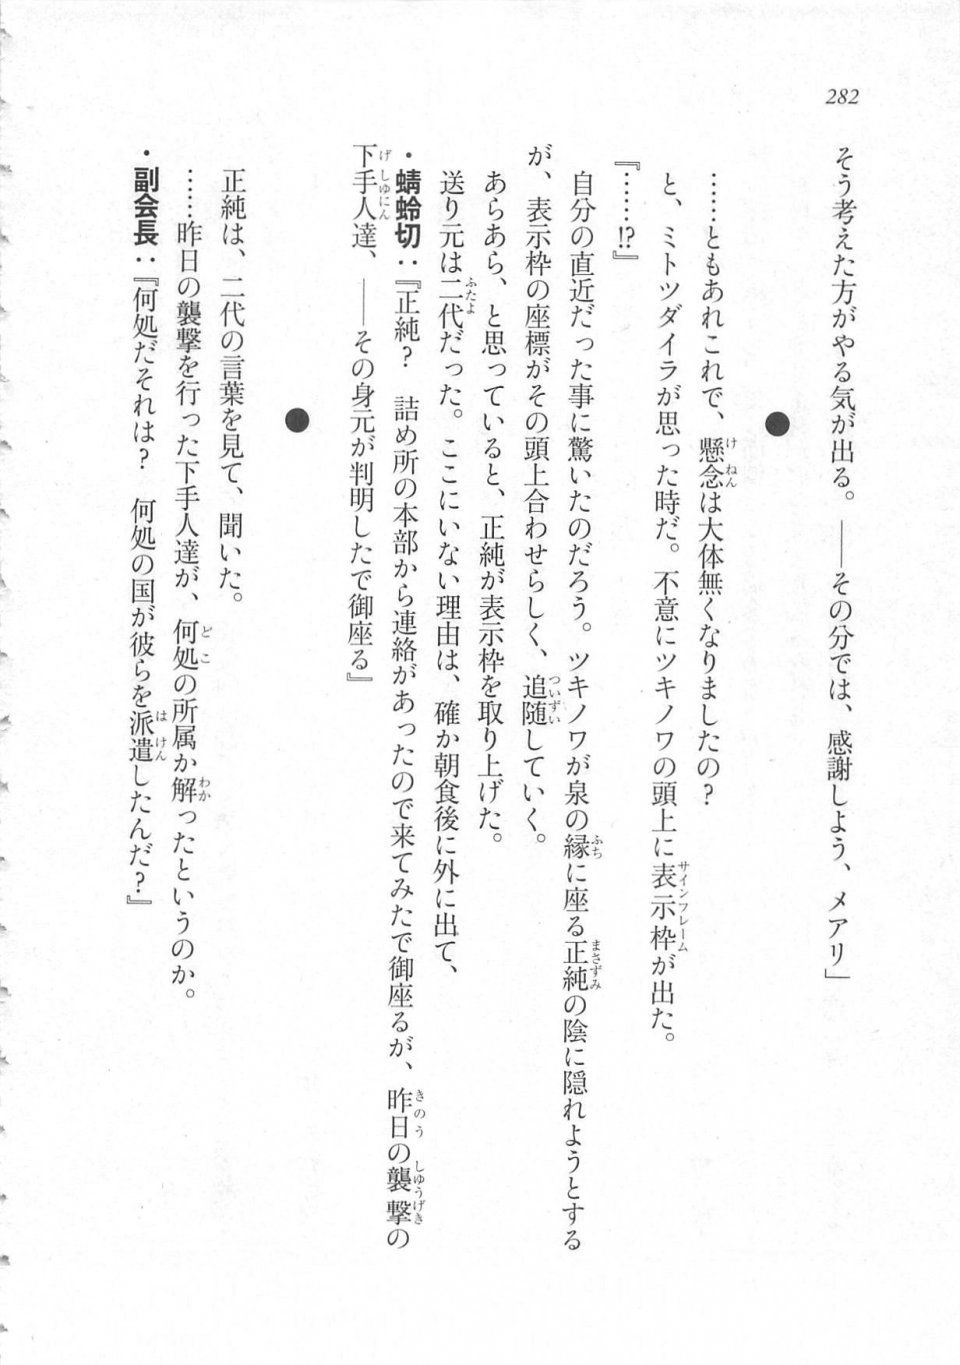 Kyoukai Senjou no Horizon LN Sidestory Vol 3 - Photo #286